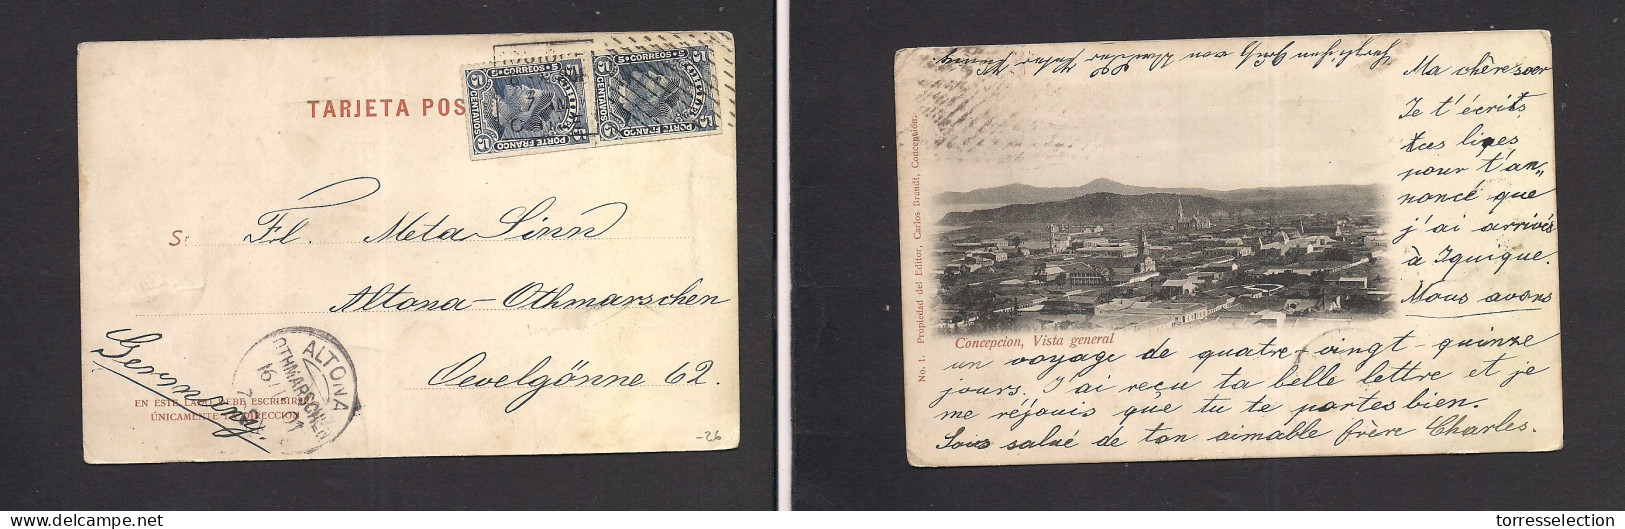 Chile - XX. 1901 (8 Oct) Iquique - Germany, Altona (16 Nov) Multifkd Ppc. Early Concepcion Pcard. Fine. XSALE. - Chile